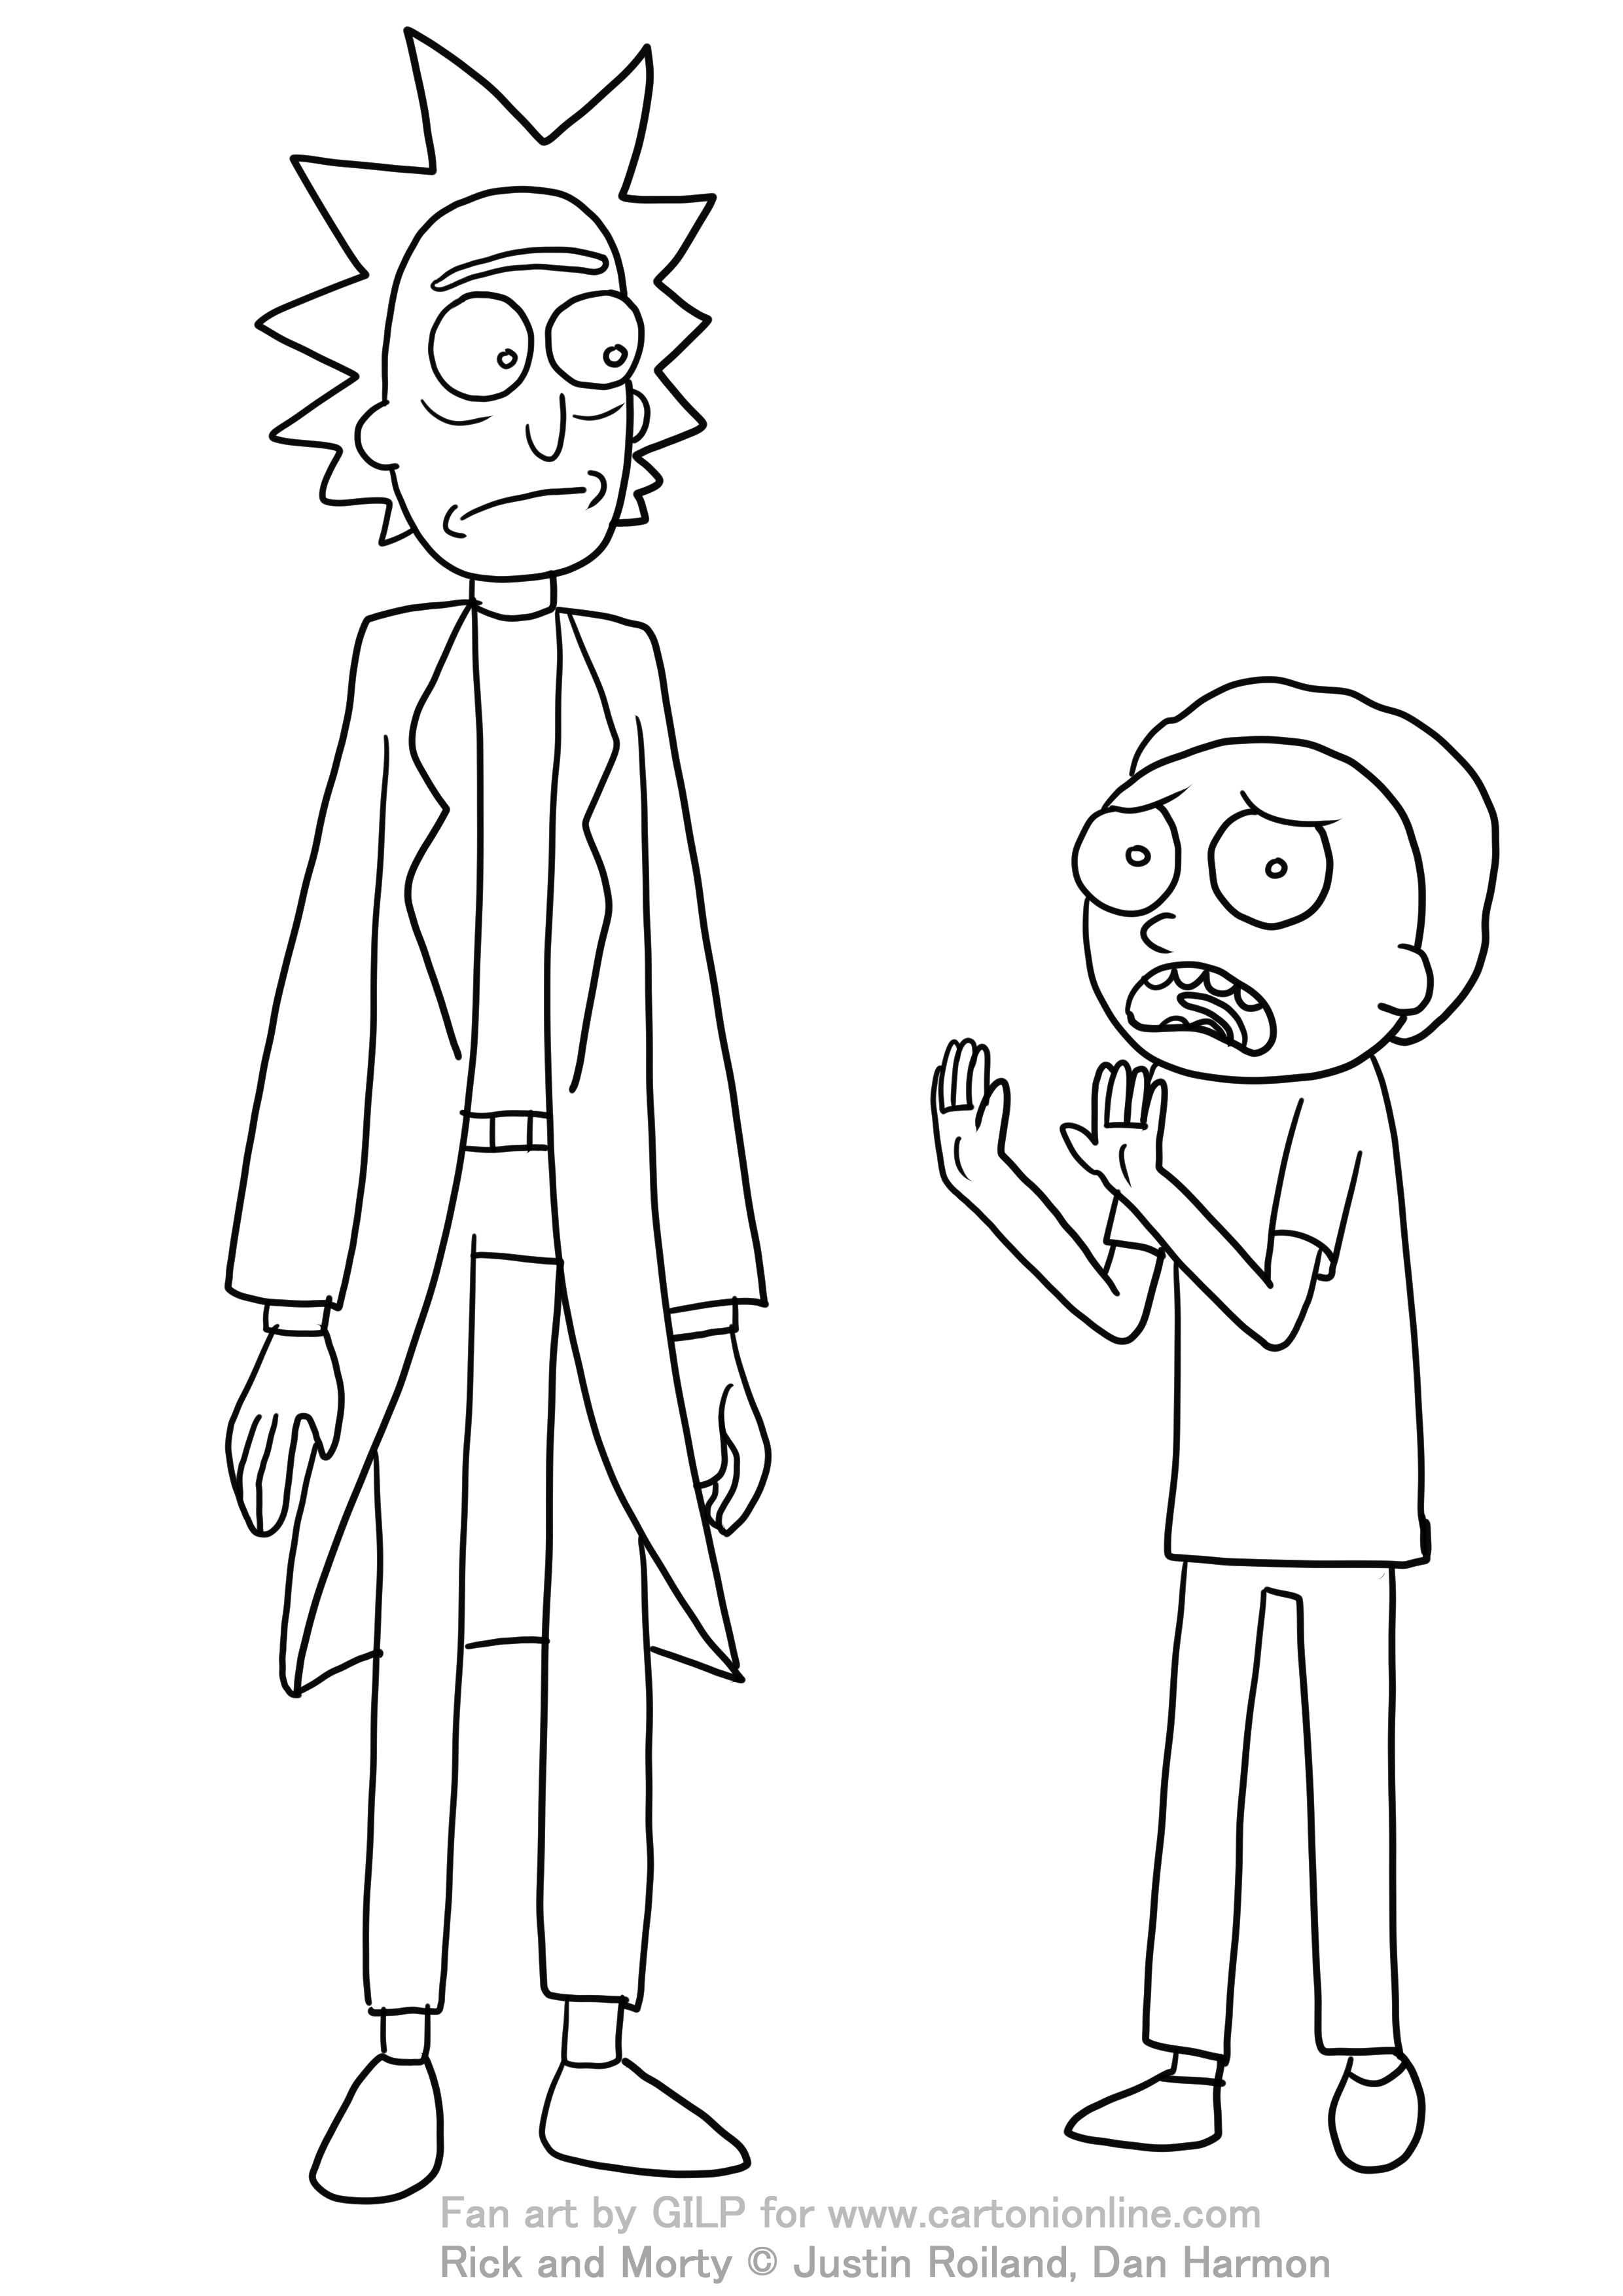 Dibujo de Rick y Morty 05 de Rick y Morty para imprimir y colorear